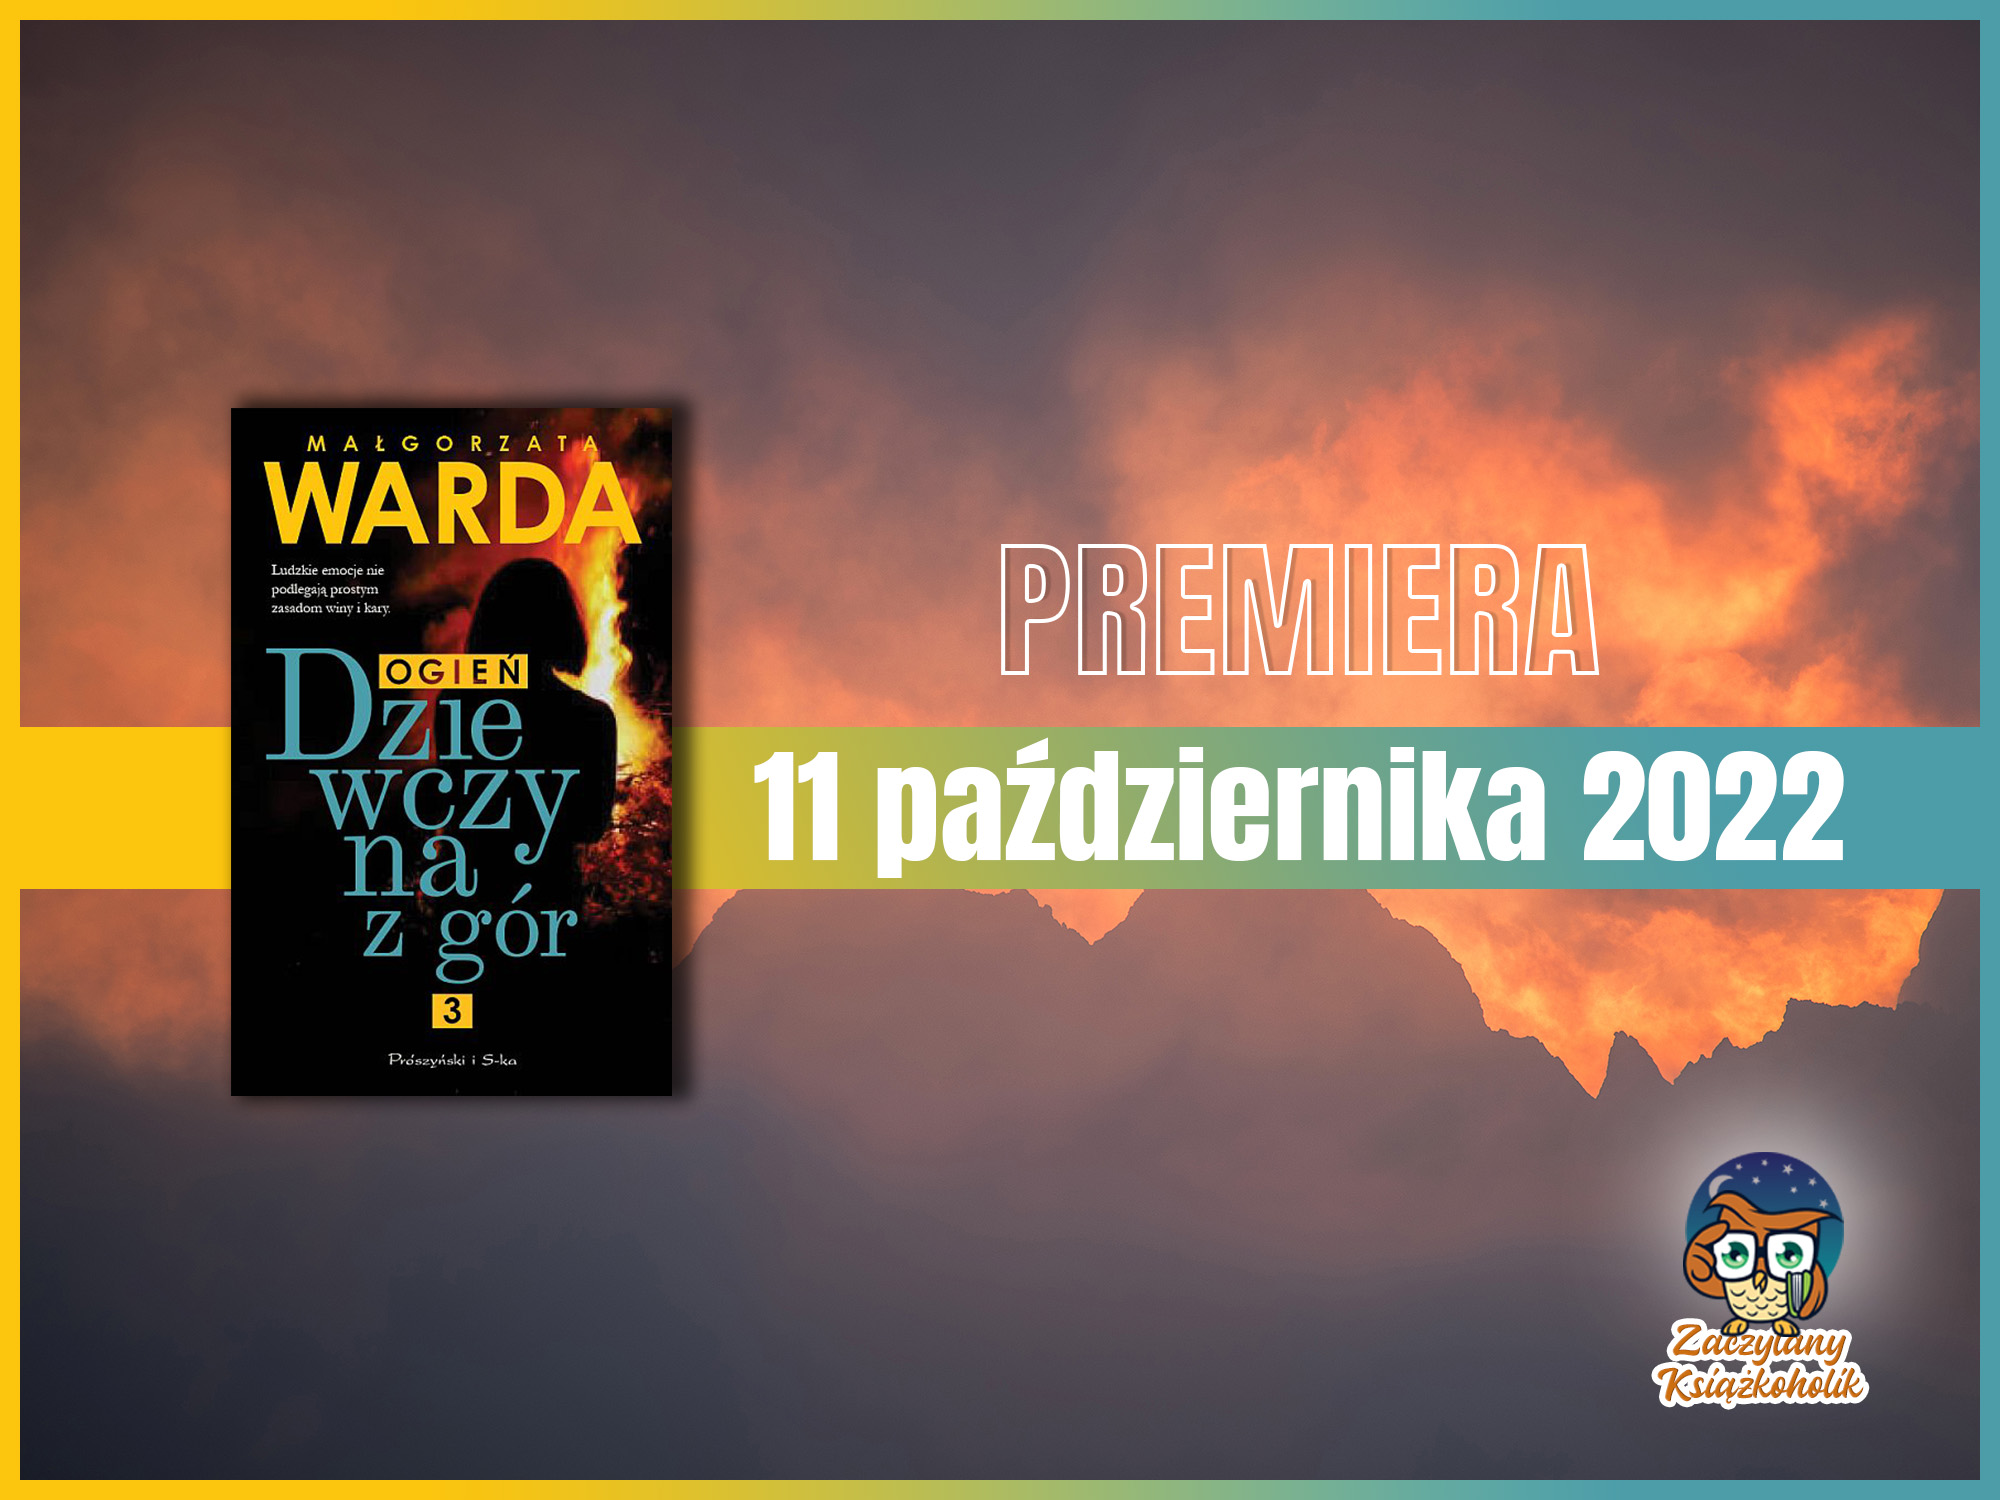 Dziewczyna z gór. Ogień-Małgorzata Warda-zaczytanyksiazkoholik.pl